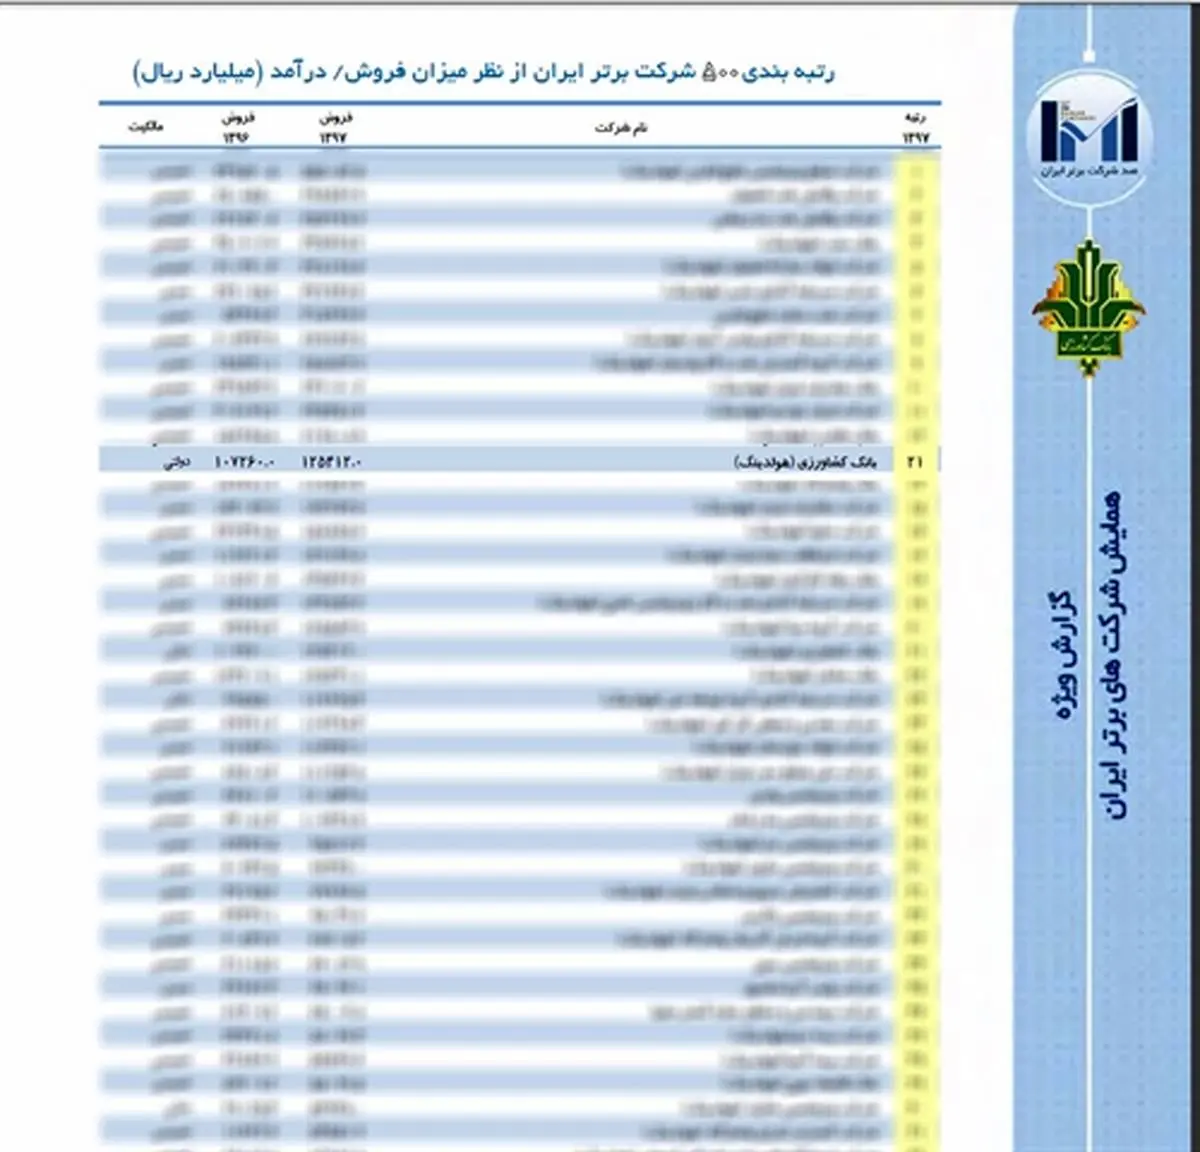 جایگاه مناسب بانک کشاورزی در فهرست شرکت های برتر ایران 